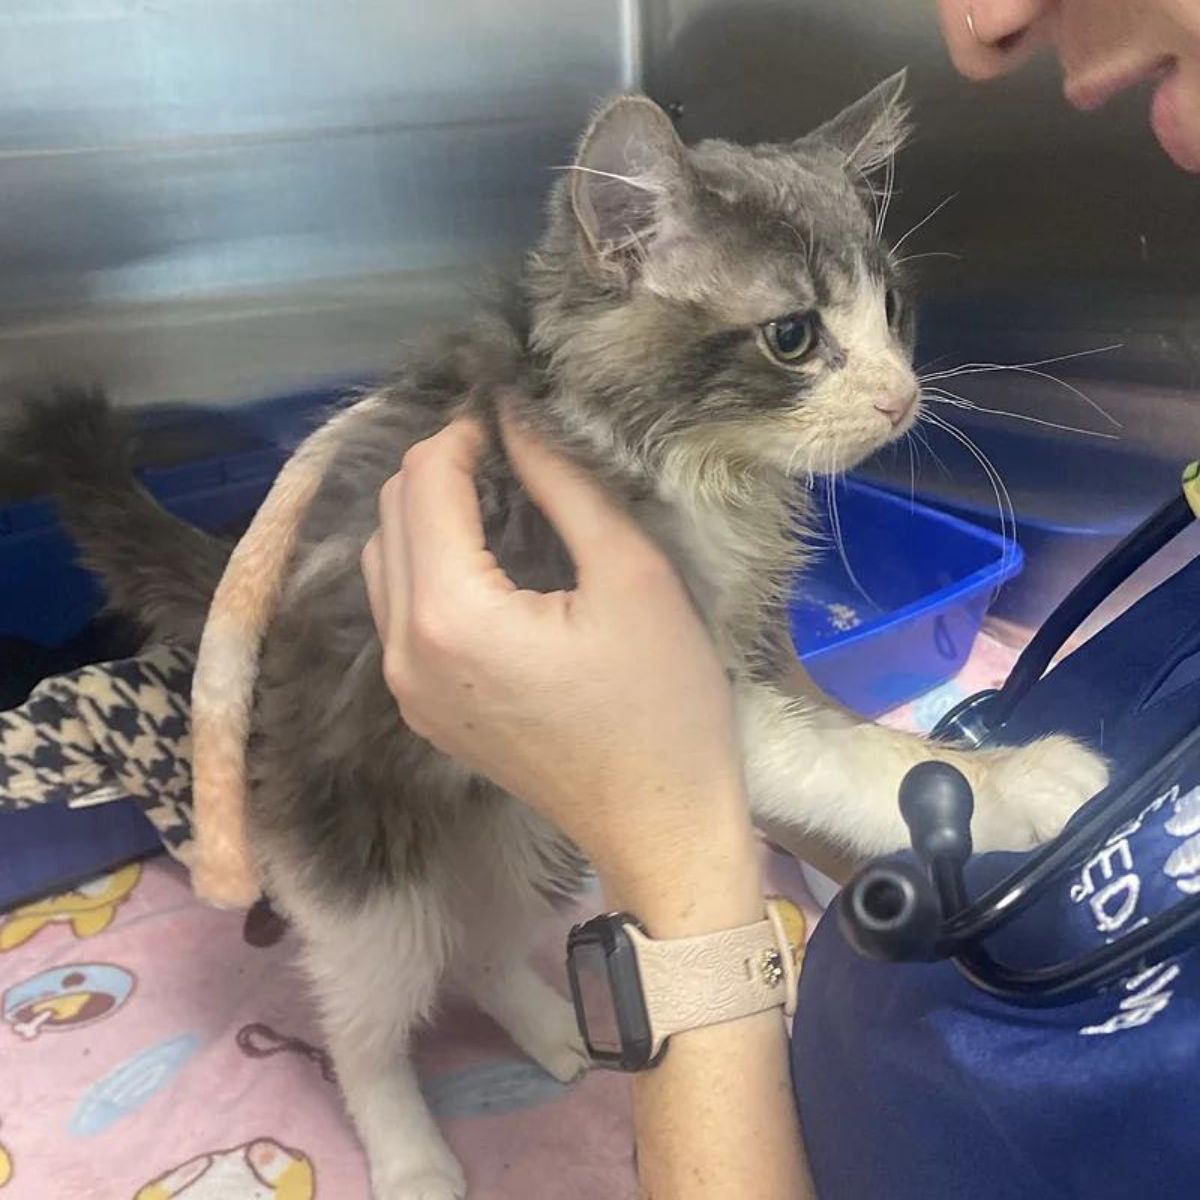 a vet checks cat